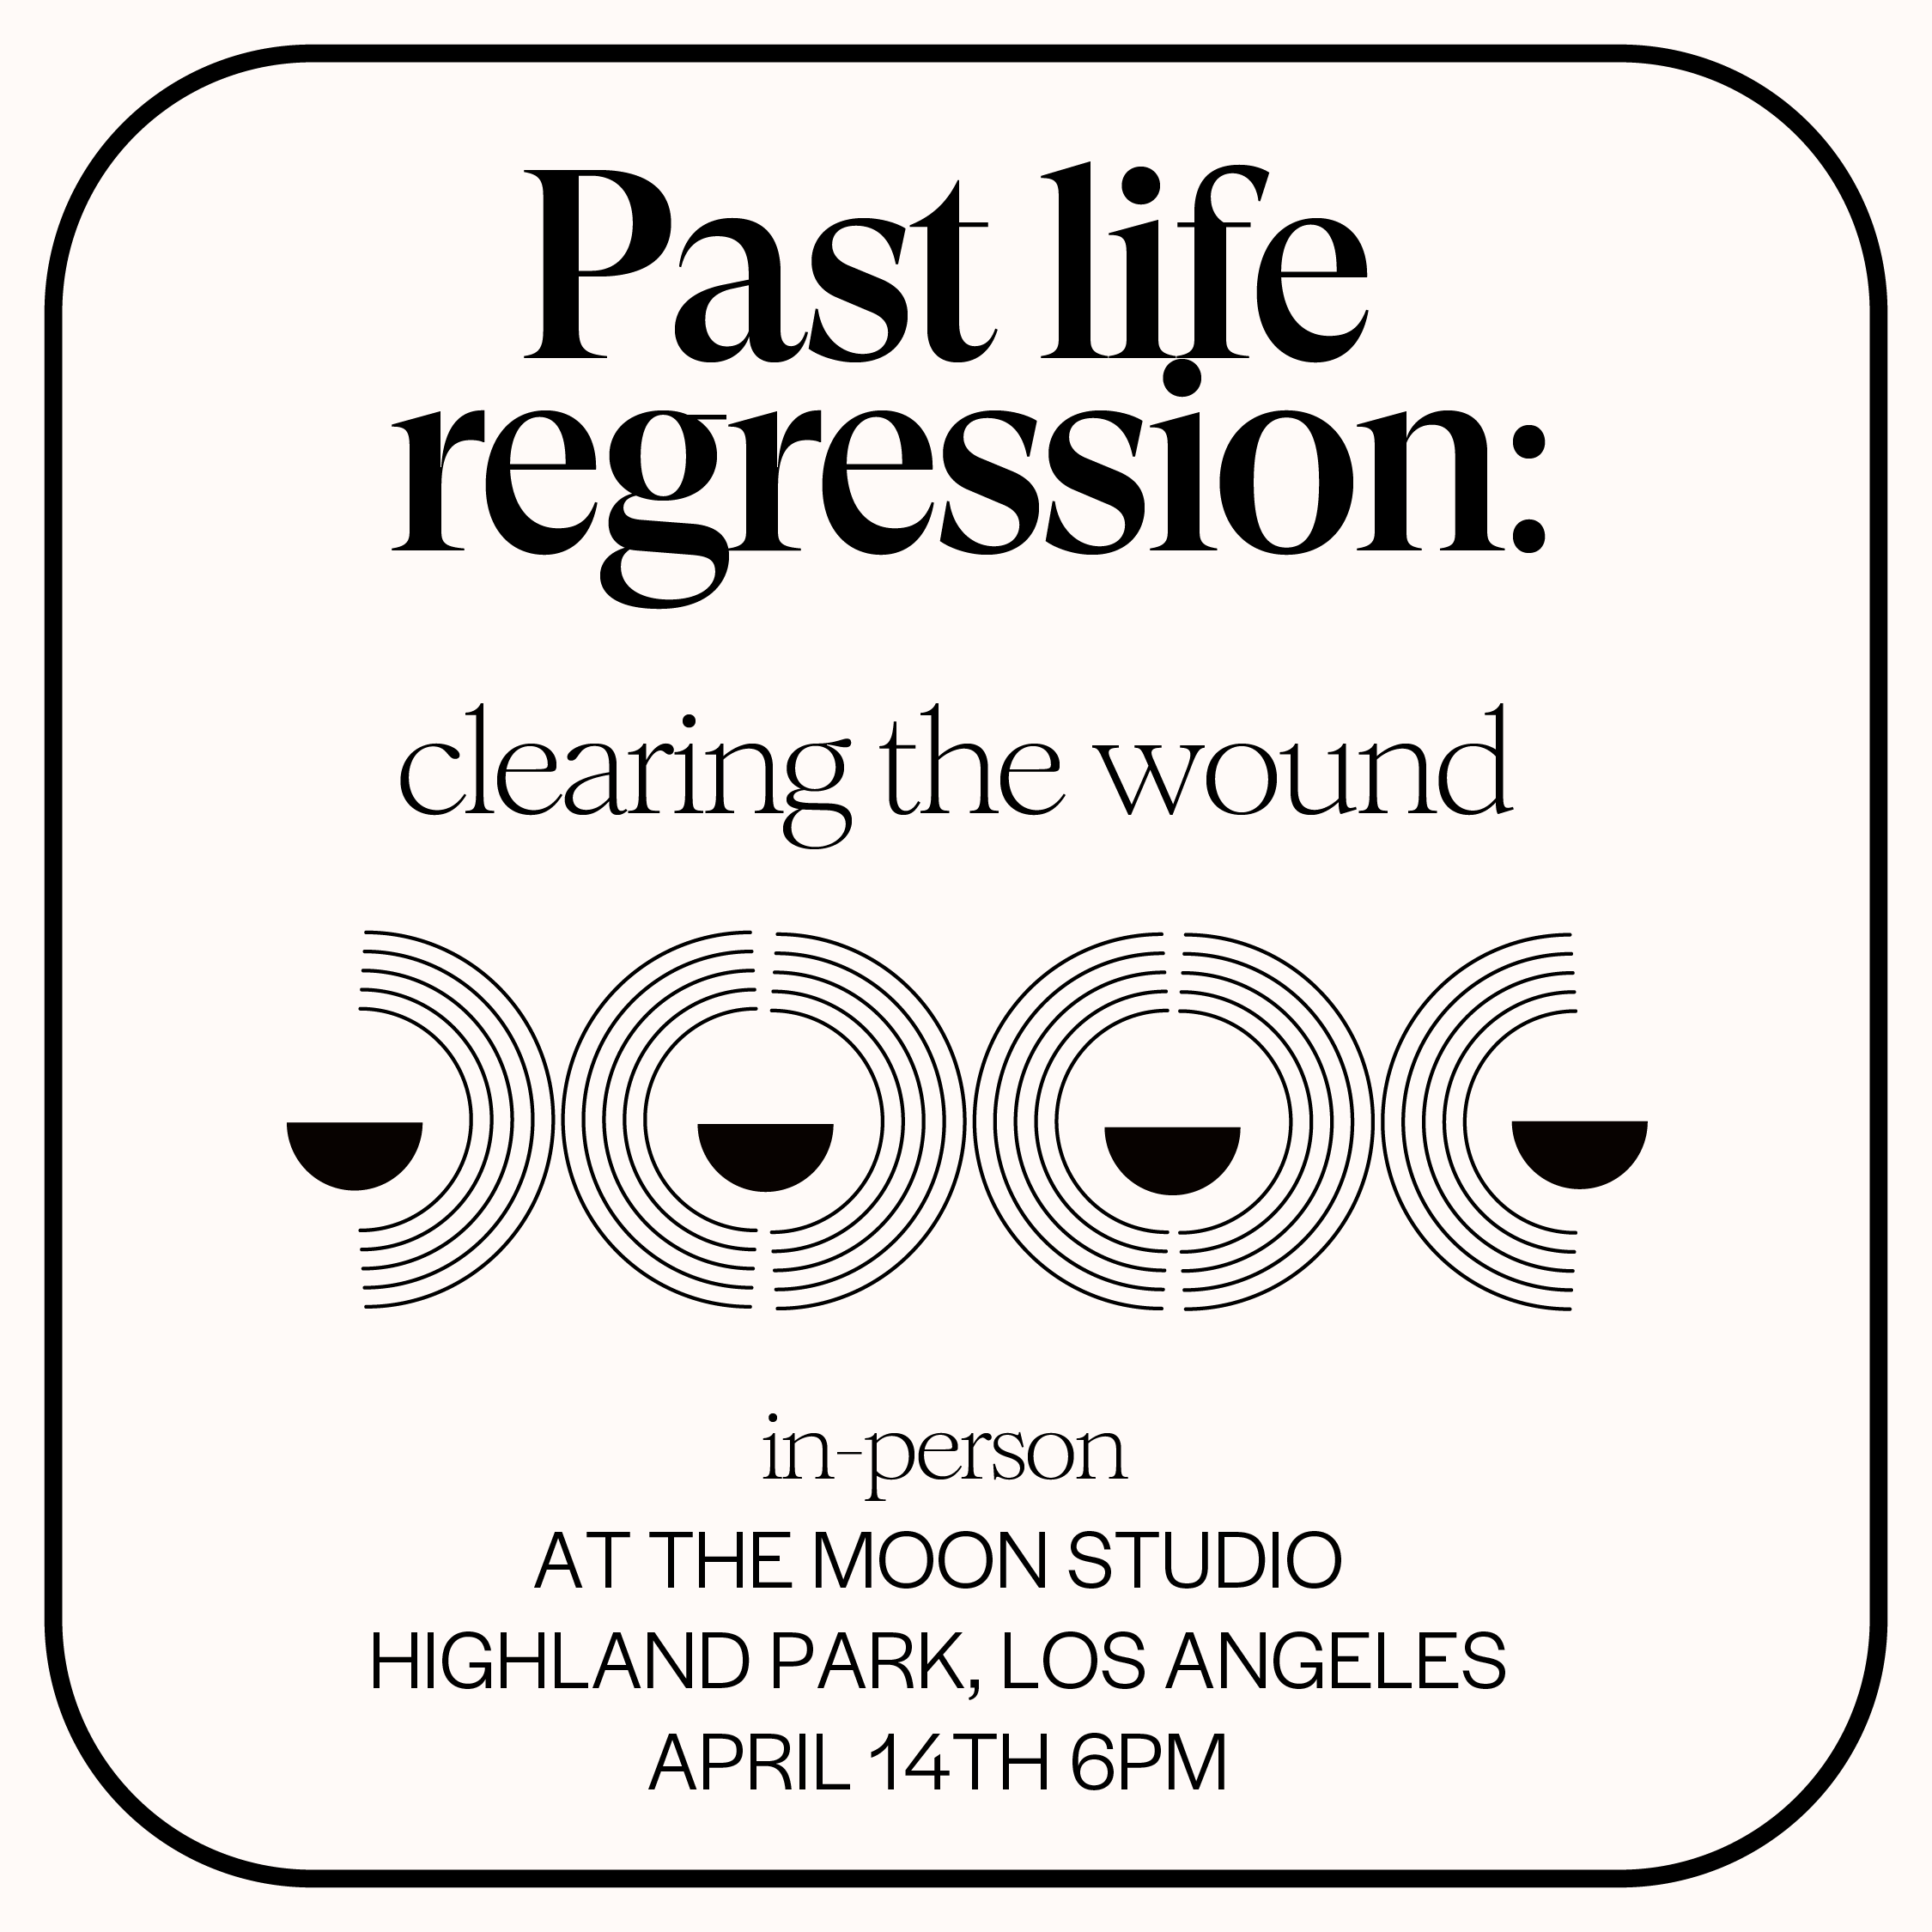 Past Life Regression April 14th at the Moon Studio